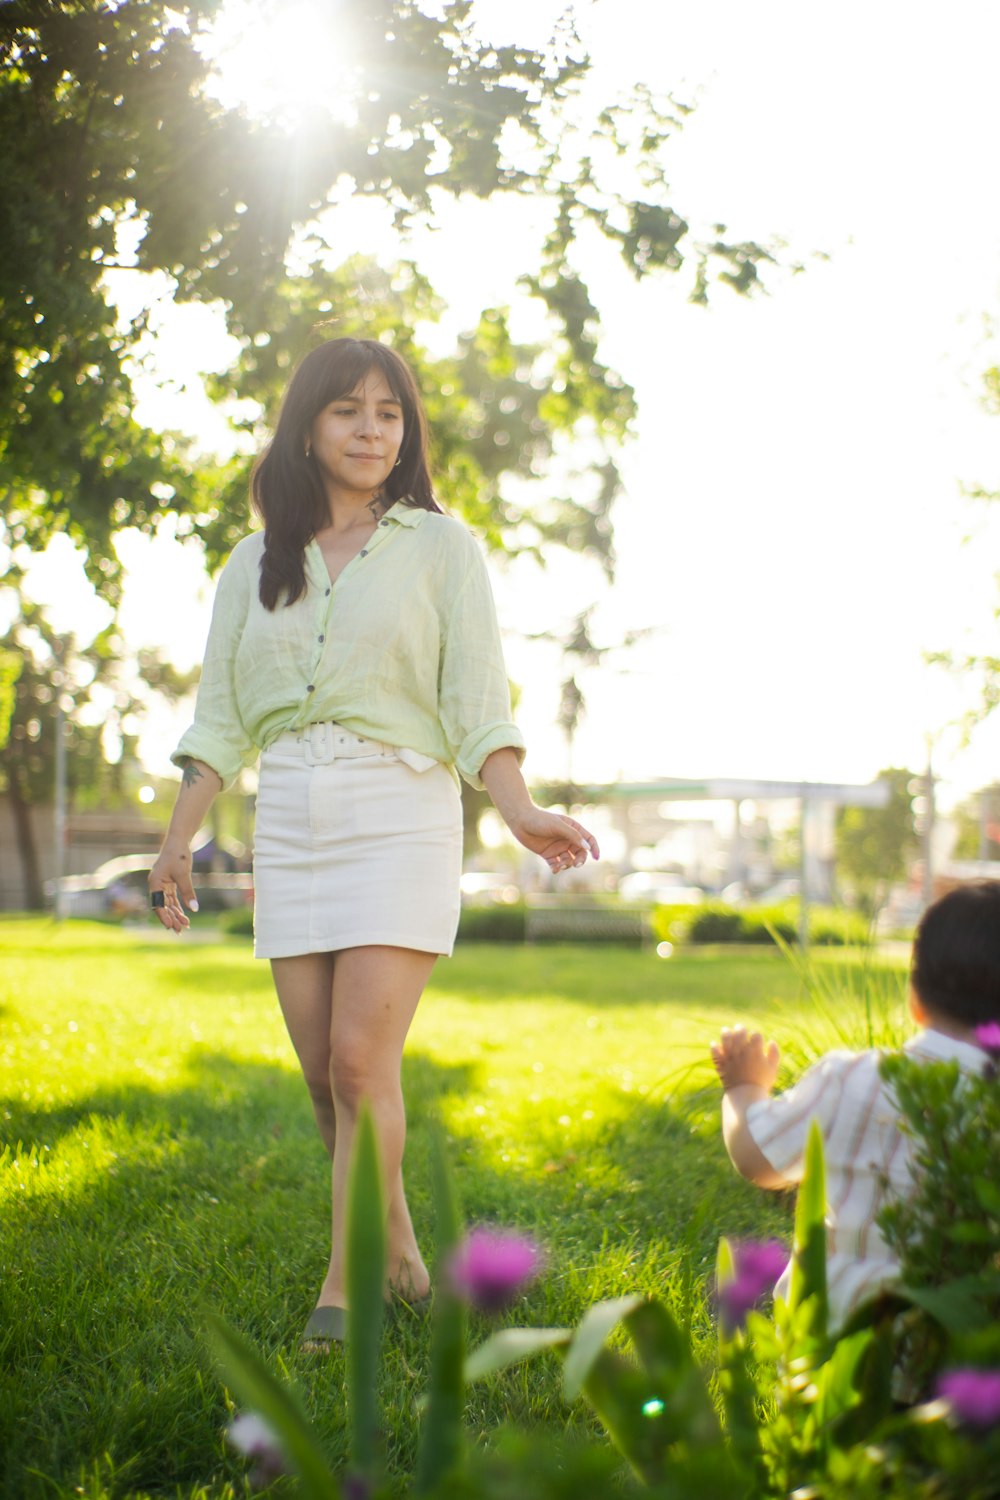 a woman walking through a lush green park